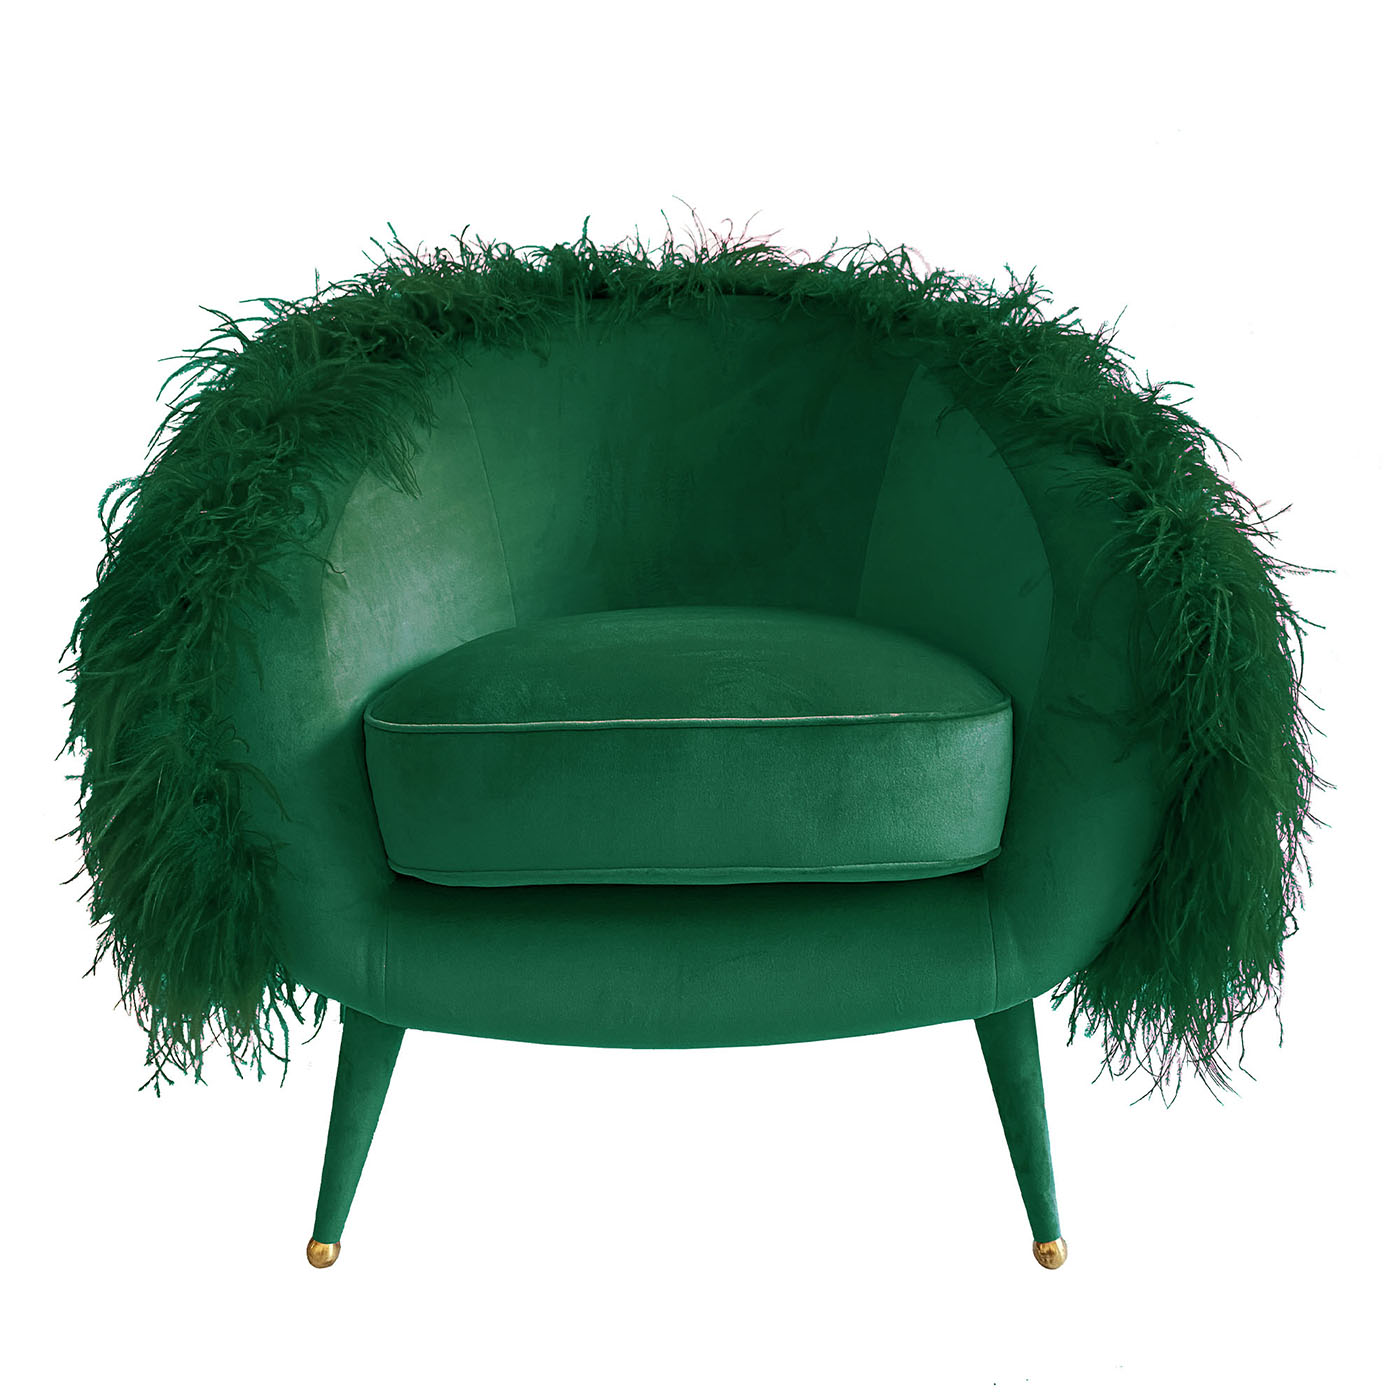 Dream Green Armchair - Main view